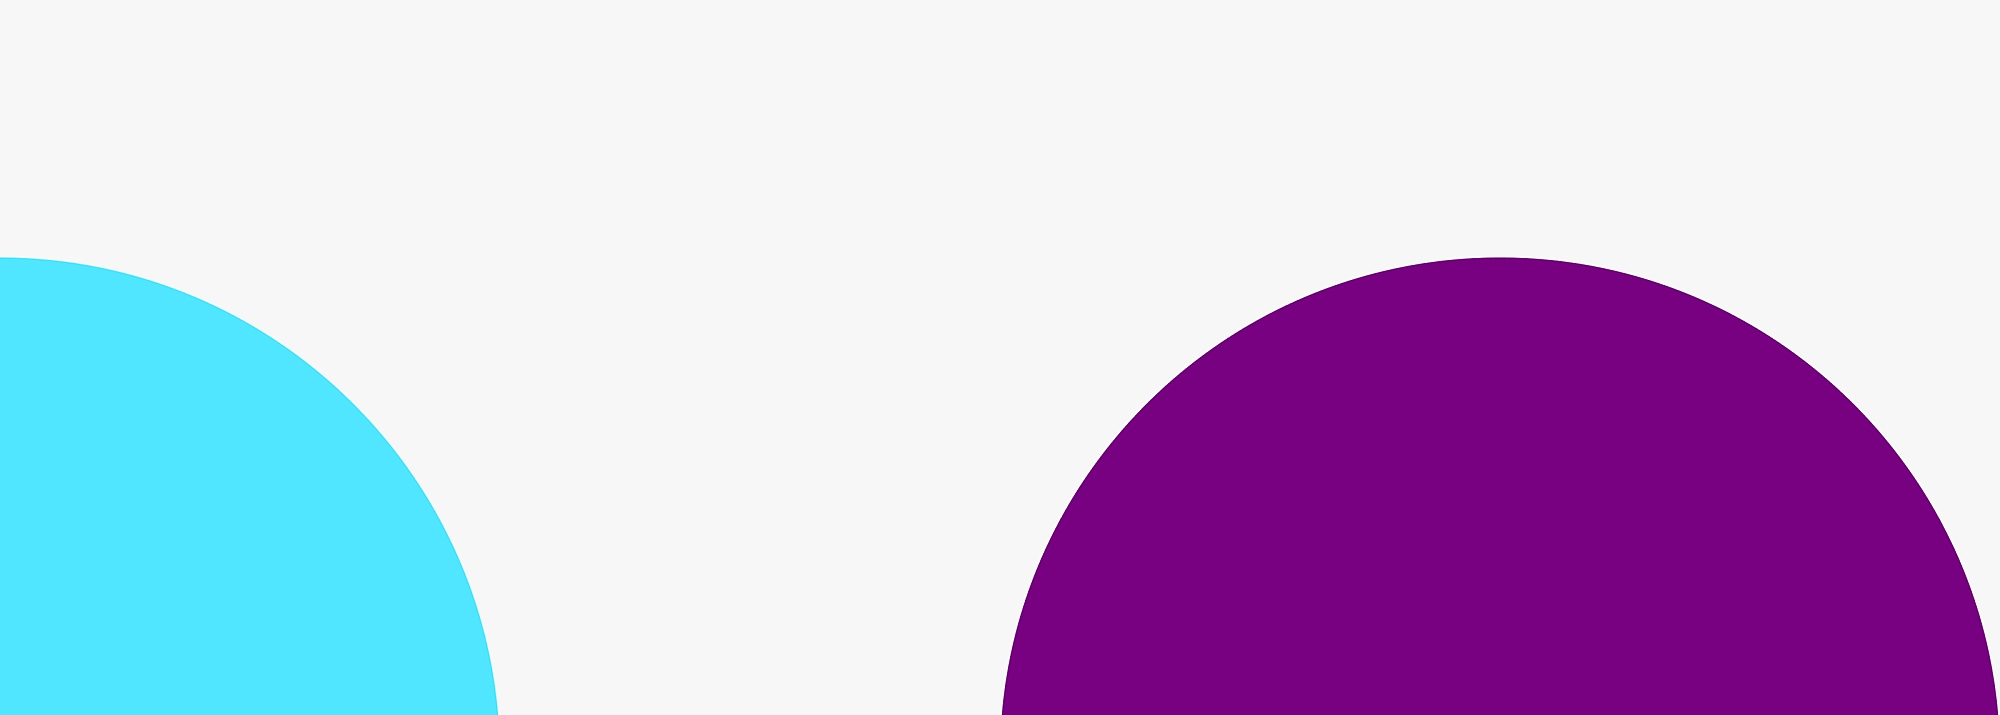 淺灰色背景上淺藍色圓圈的四分之一和紫色圓圈的一半